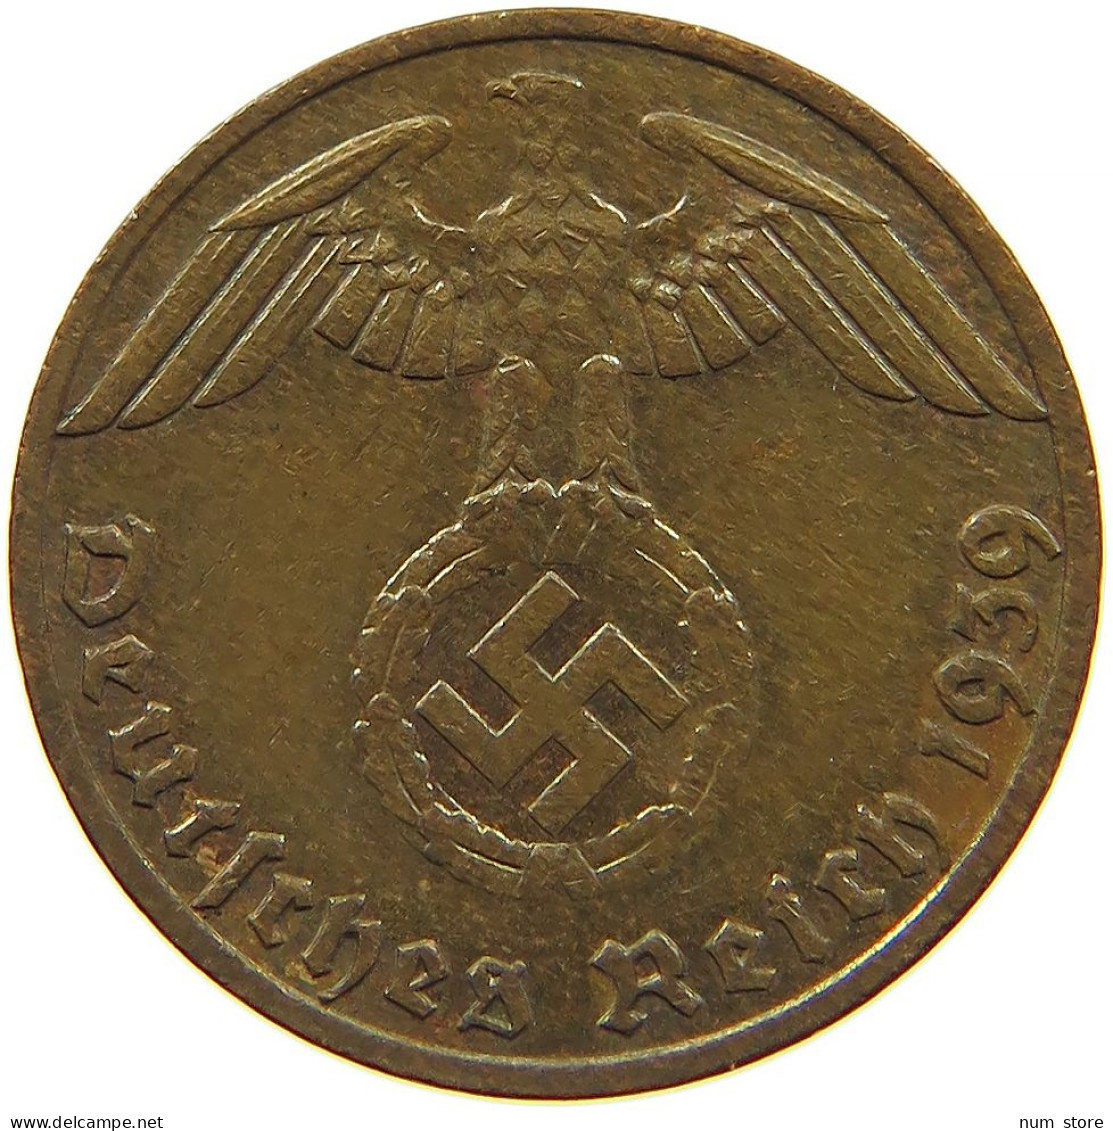 GERMANY 1 REICHSPFENNIG 1939 F #s096 0125 - 1 Reichspfennig